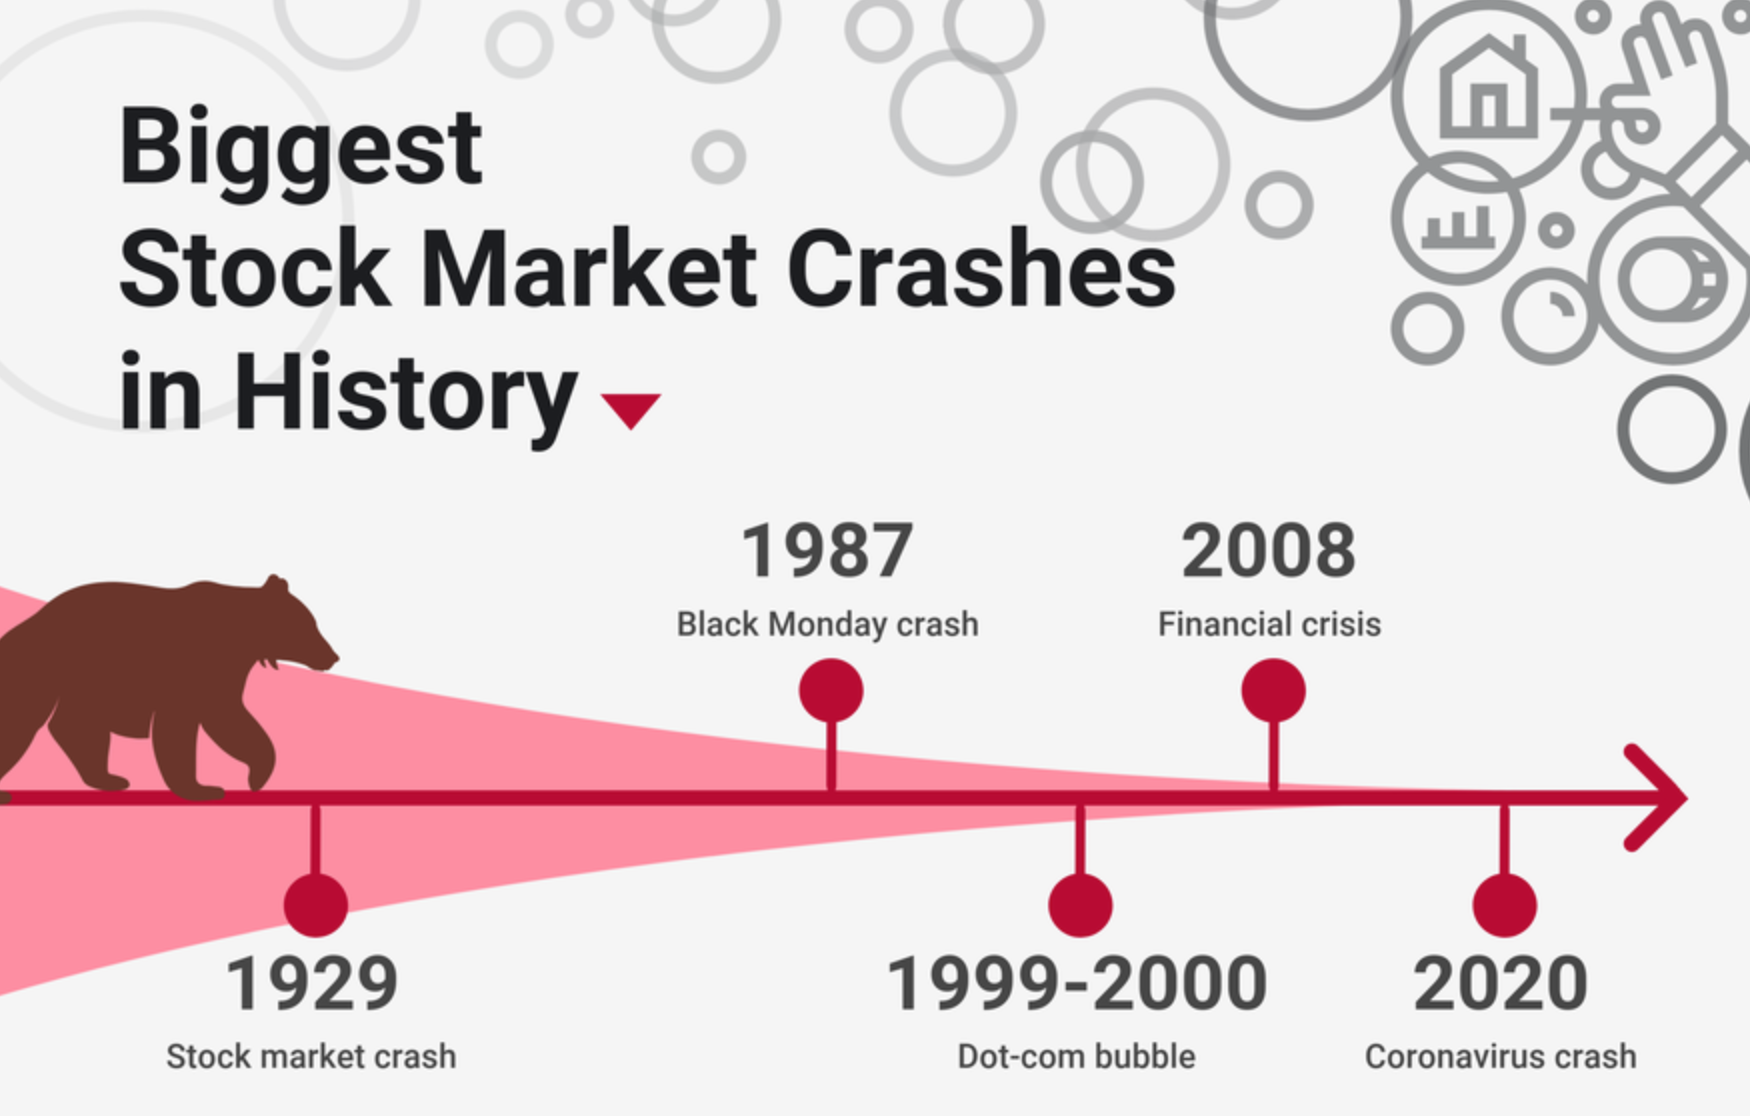 Крупнейшие обвалы рынка 20⁠—⁠21 веков: биржевой крах 1929 года, Черный понедельник в 1987, крах доткомов 1999⁠—⁠2000, финансовый кризис 2008 года и коррекция на фоне коронавируса в 2020. Источник: The Motley Fool